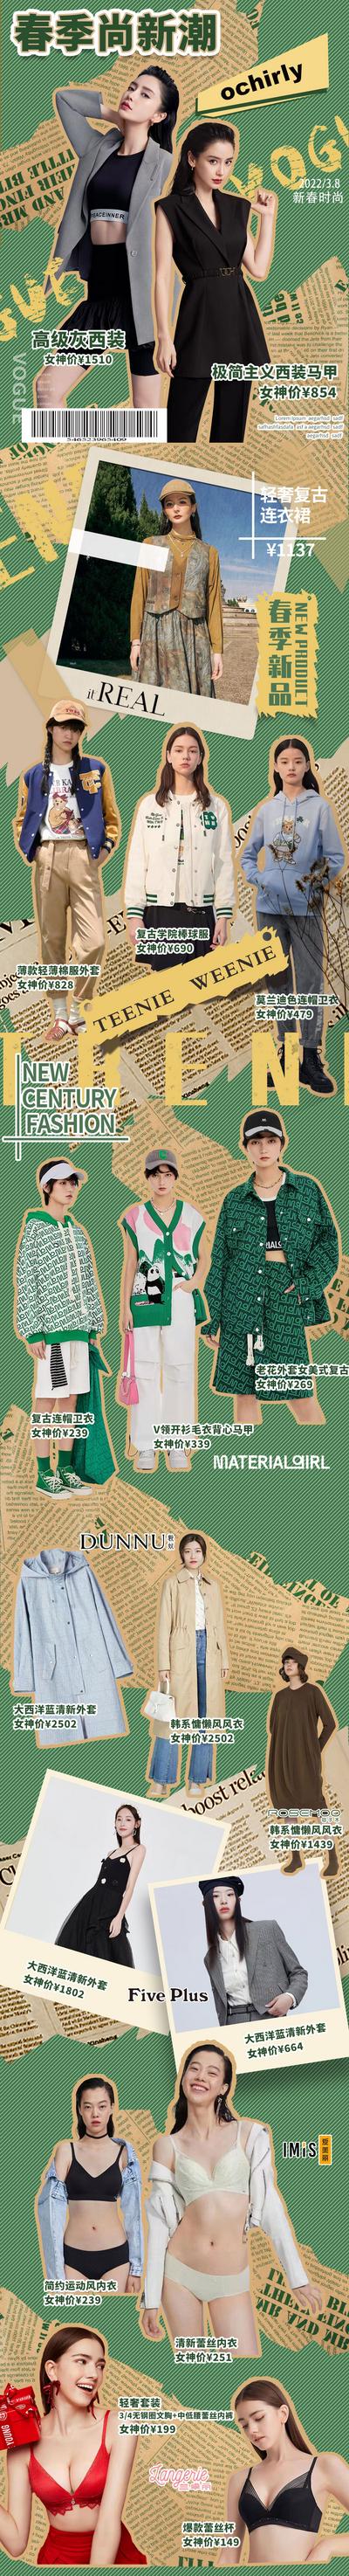 【南门网】专题设计 长图 服饰 穿搭 潮流 时尚 复古 拼贴 绿色